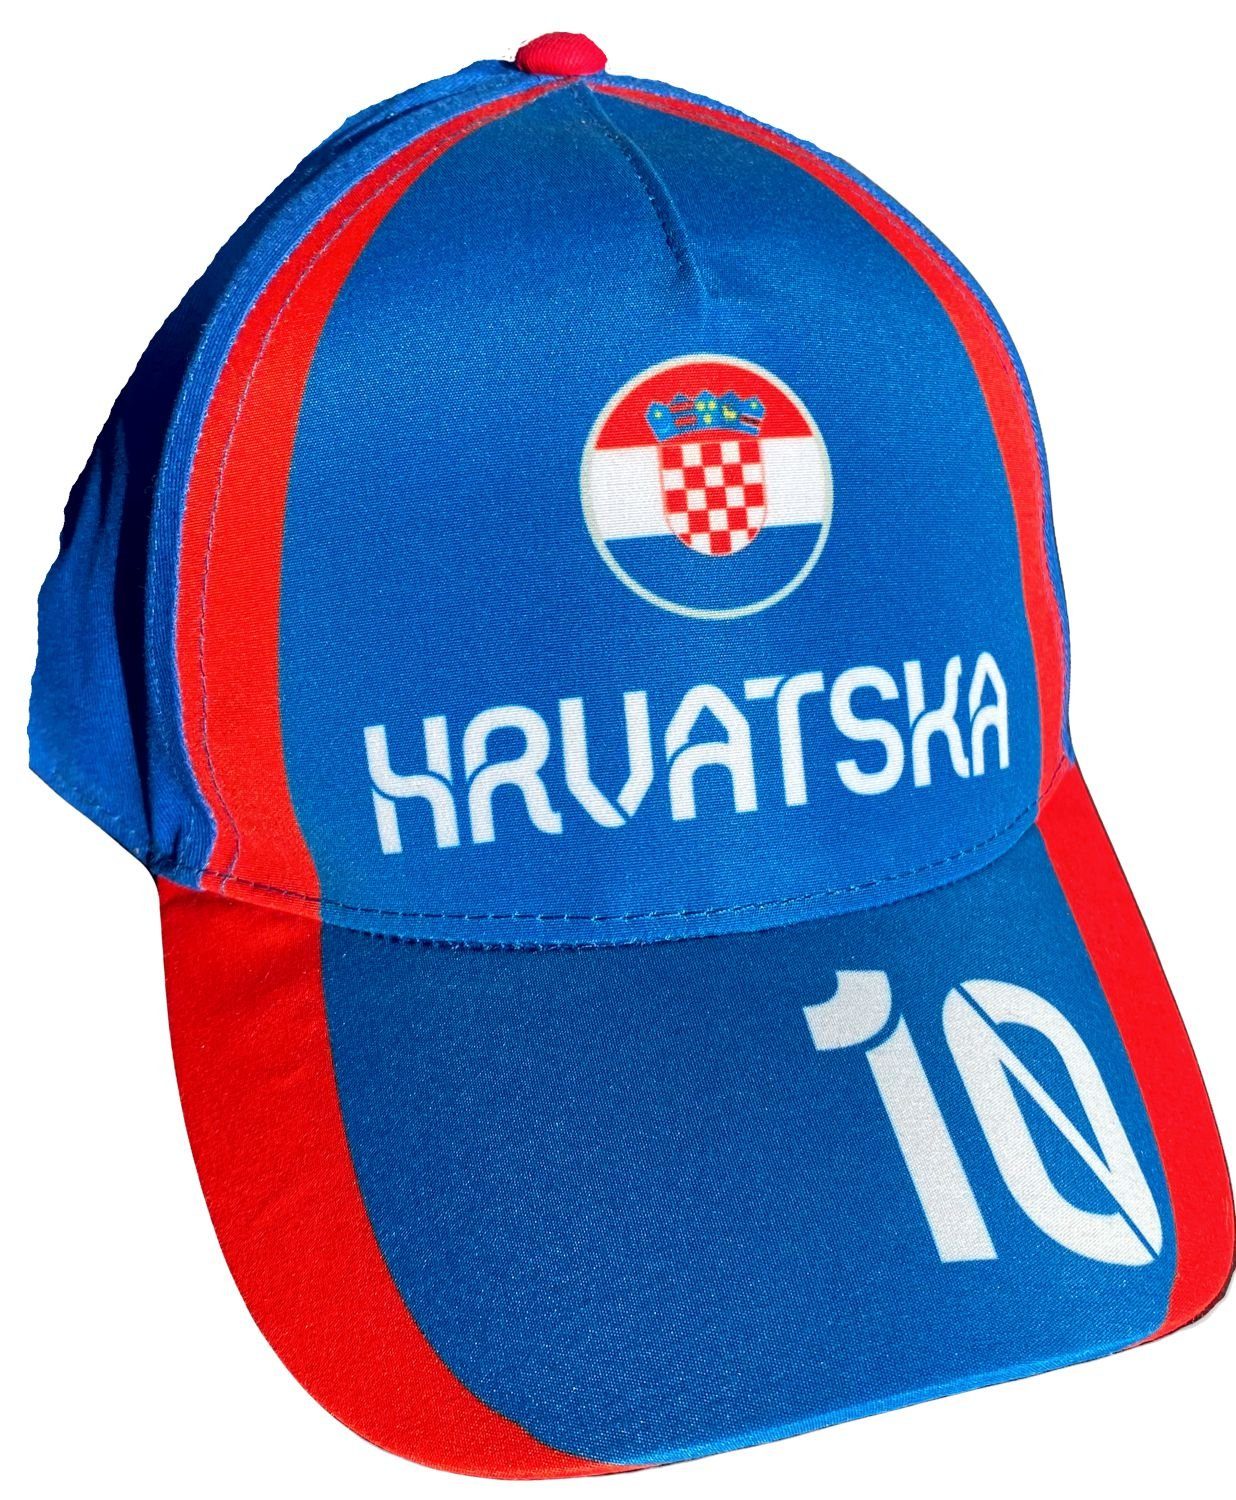 coole-fun-t-shirts Baseball Cap KROATIEN BASEBALL CAP Kinder Jungen + Mädchen Schirmmütze HRVATSKY Gr.52 54 blau und weiß